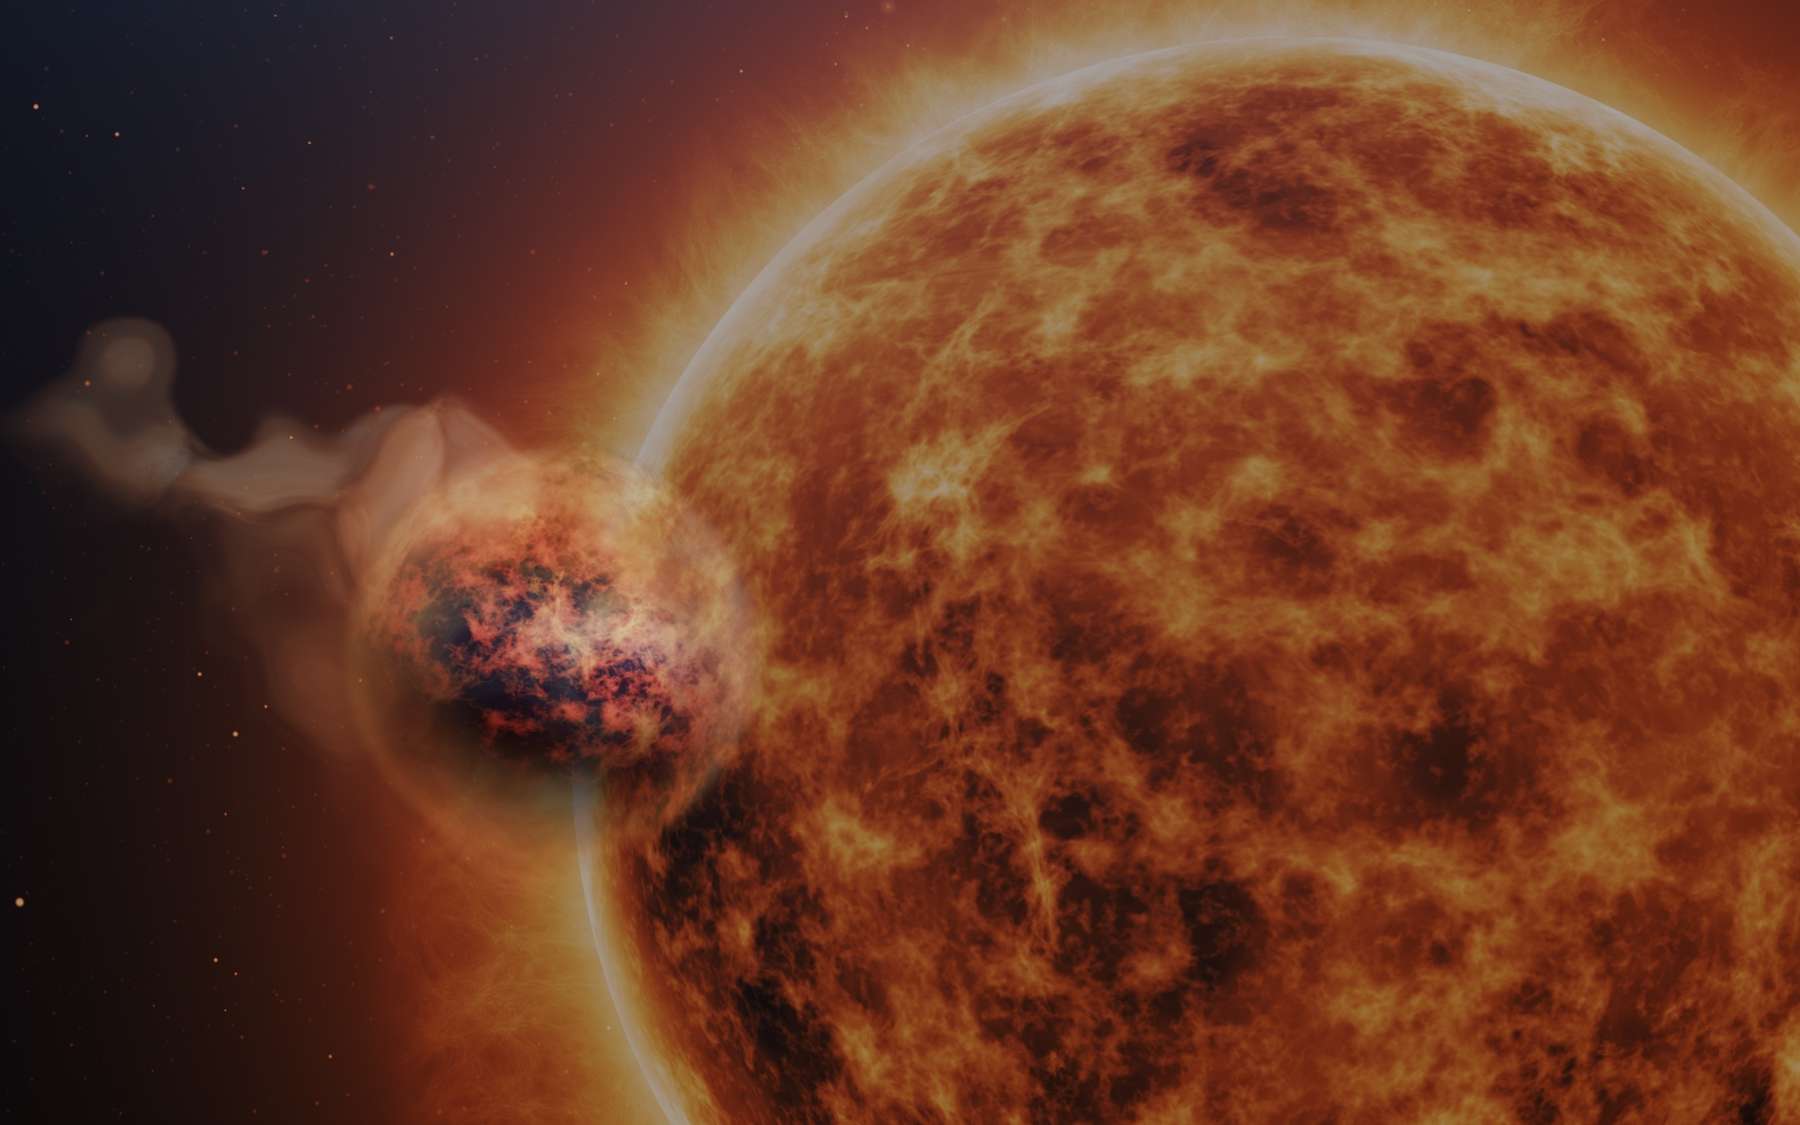 Le télescope James-Webb révèle une exoplanète « barbe à papa » aux « pluies de sable » qui défie les astronomes